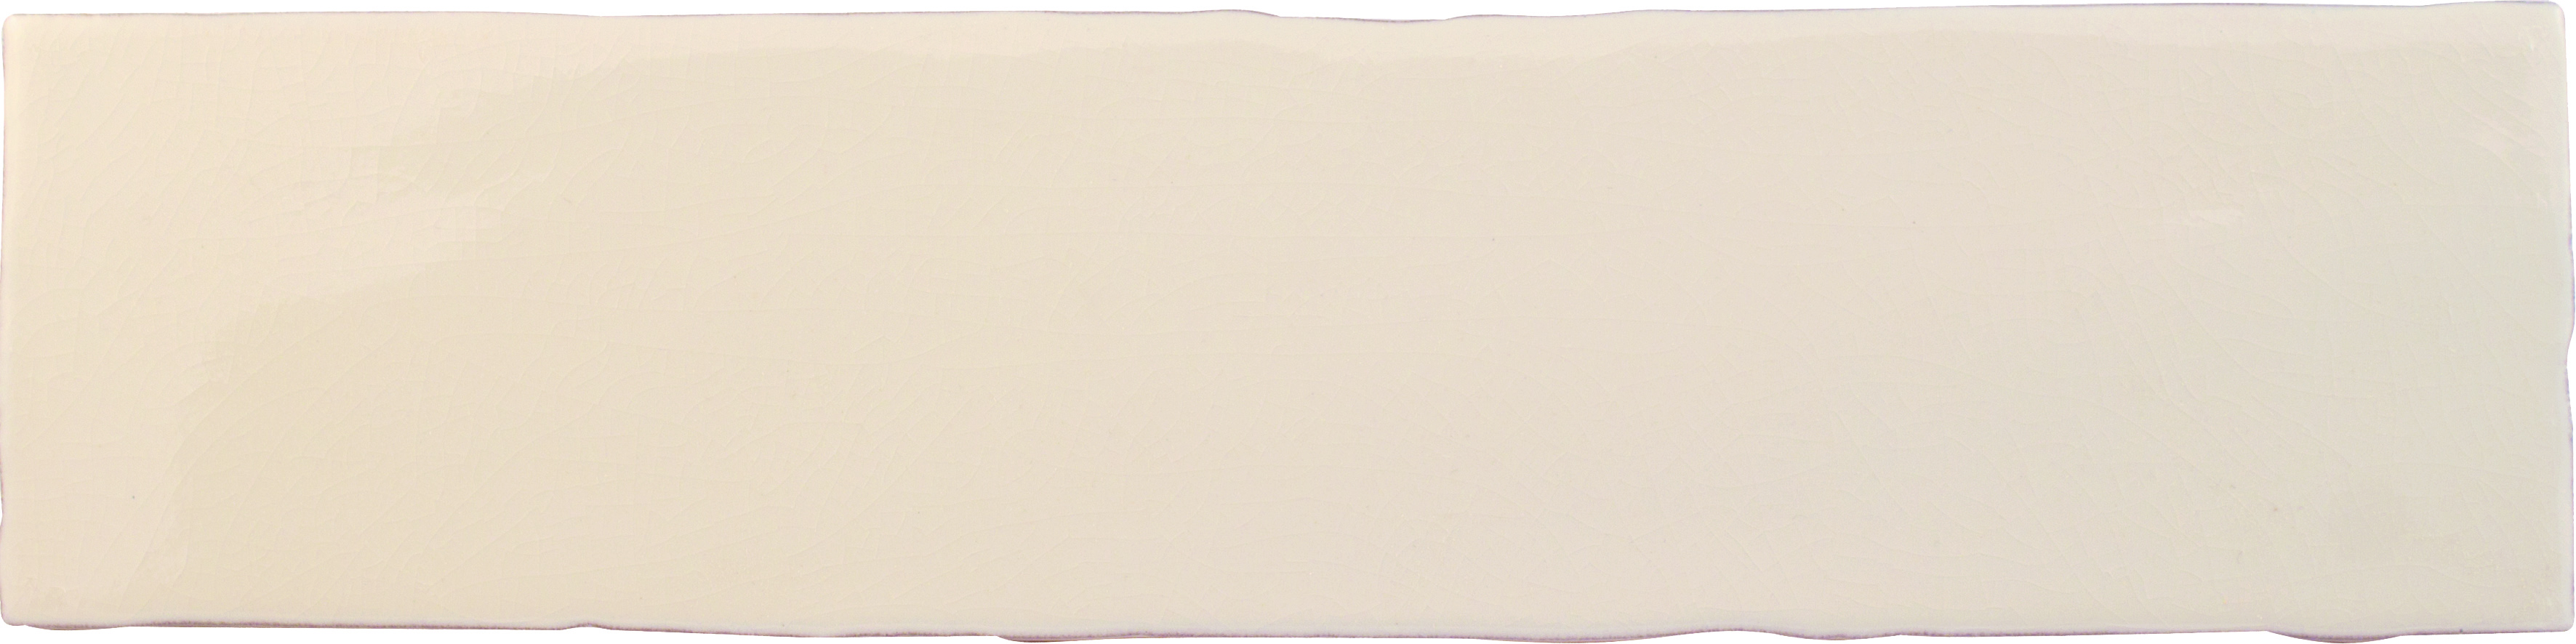 Wandfliese 7,5x30 cm  dunkelcreme glänzend
Cevica  Alaska  Dark White ( Craquele ) 
Art: A53845